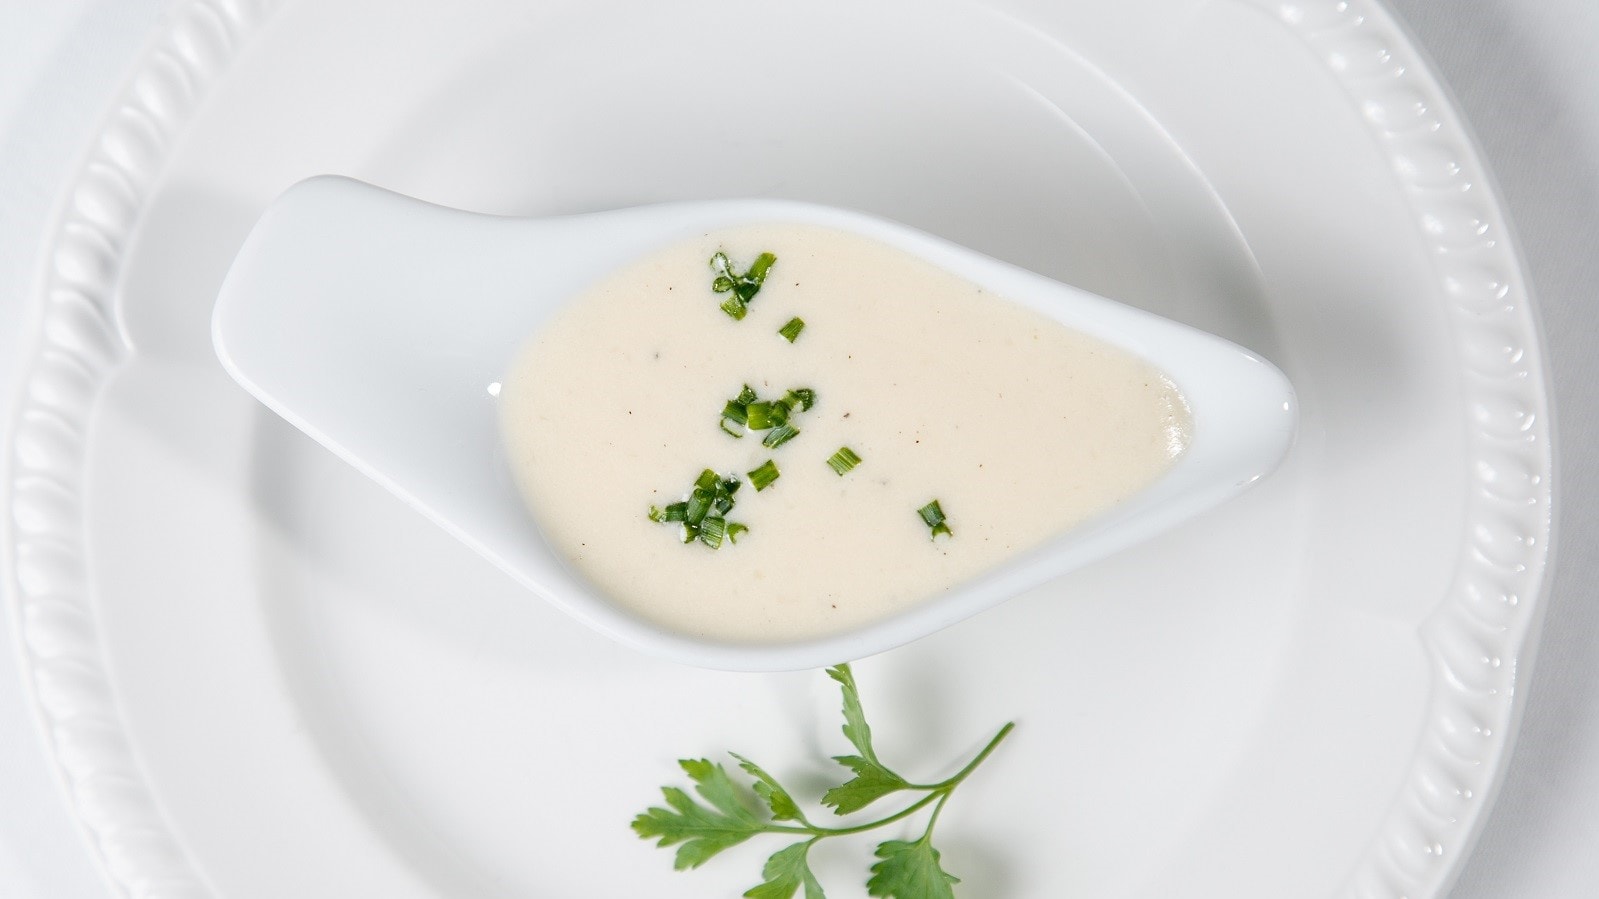 Eine Schale mit Beurre blanc auf einem weißen Teller.